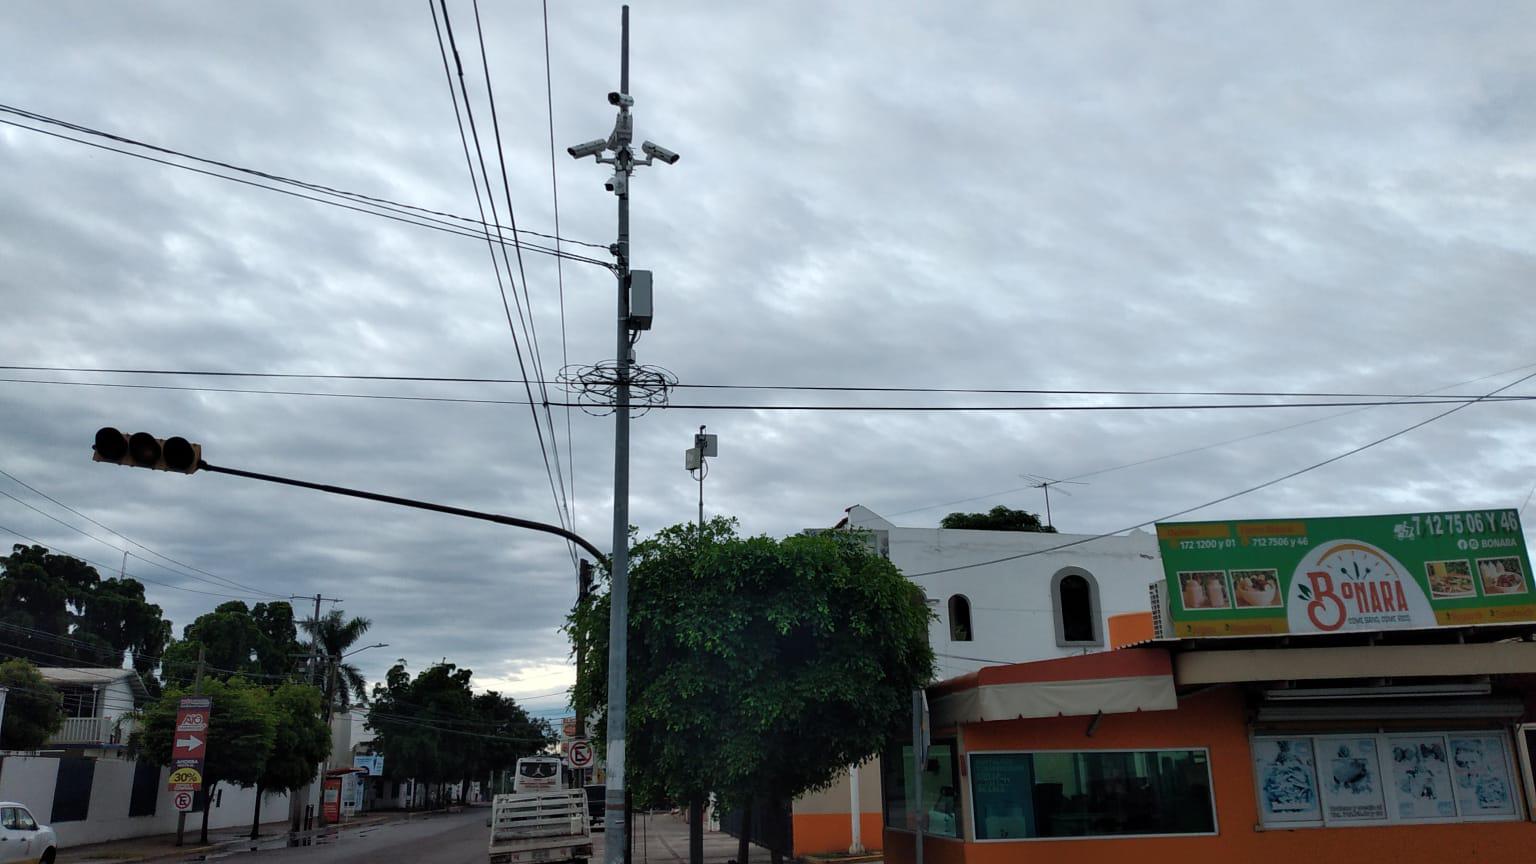 $!Otra vez dañan cámaras de seguridad en Culiacán